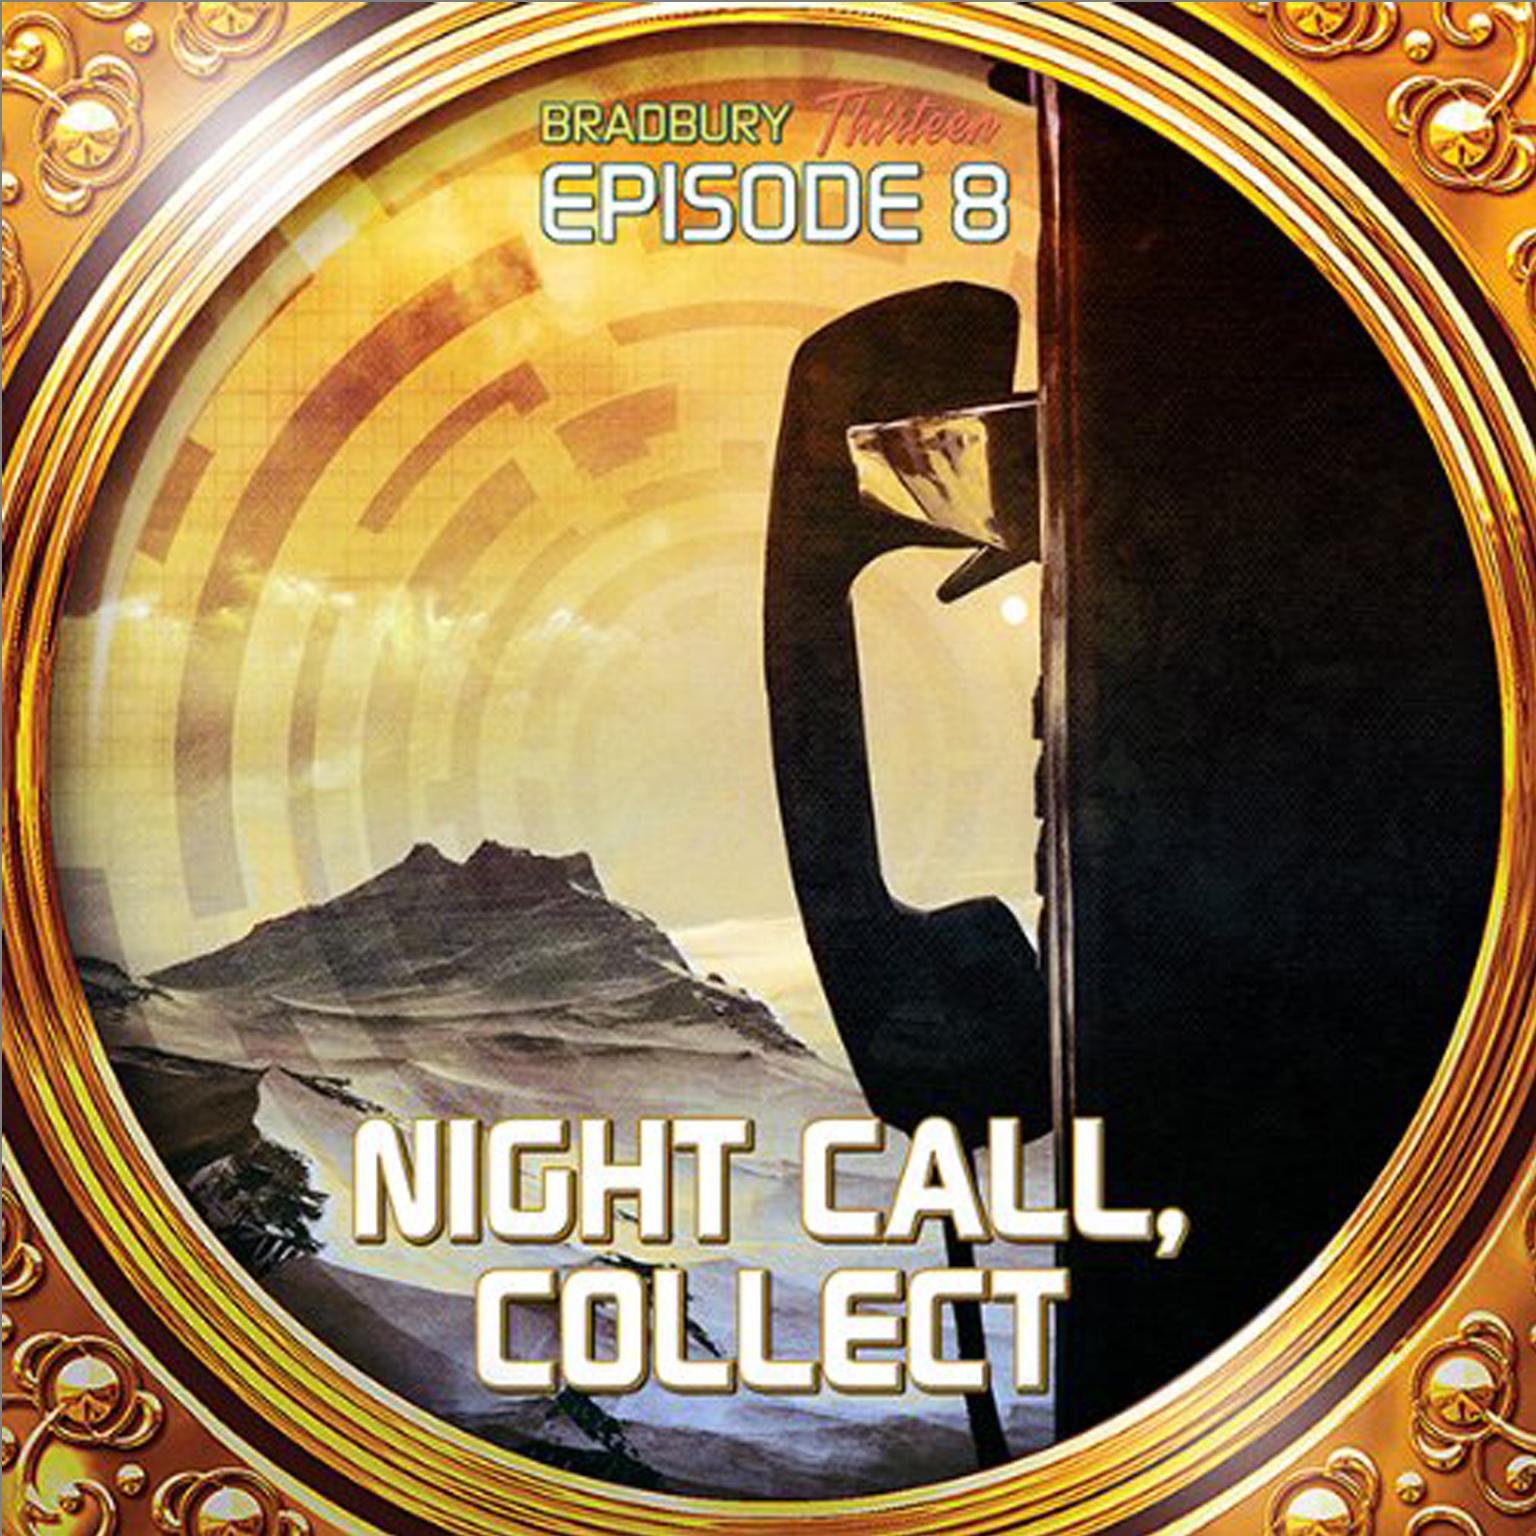 Night Call, Collect: Bradbury Thirteen: Episode 8 Audiobook, by Ray Bradbury